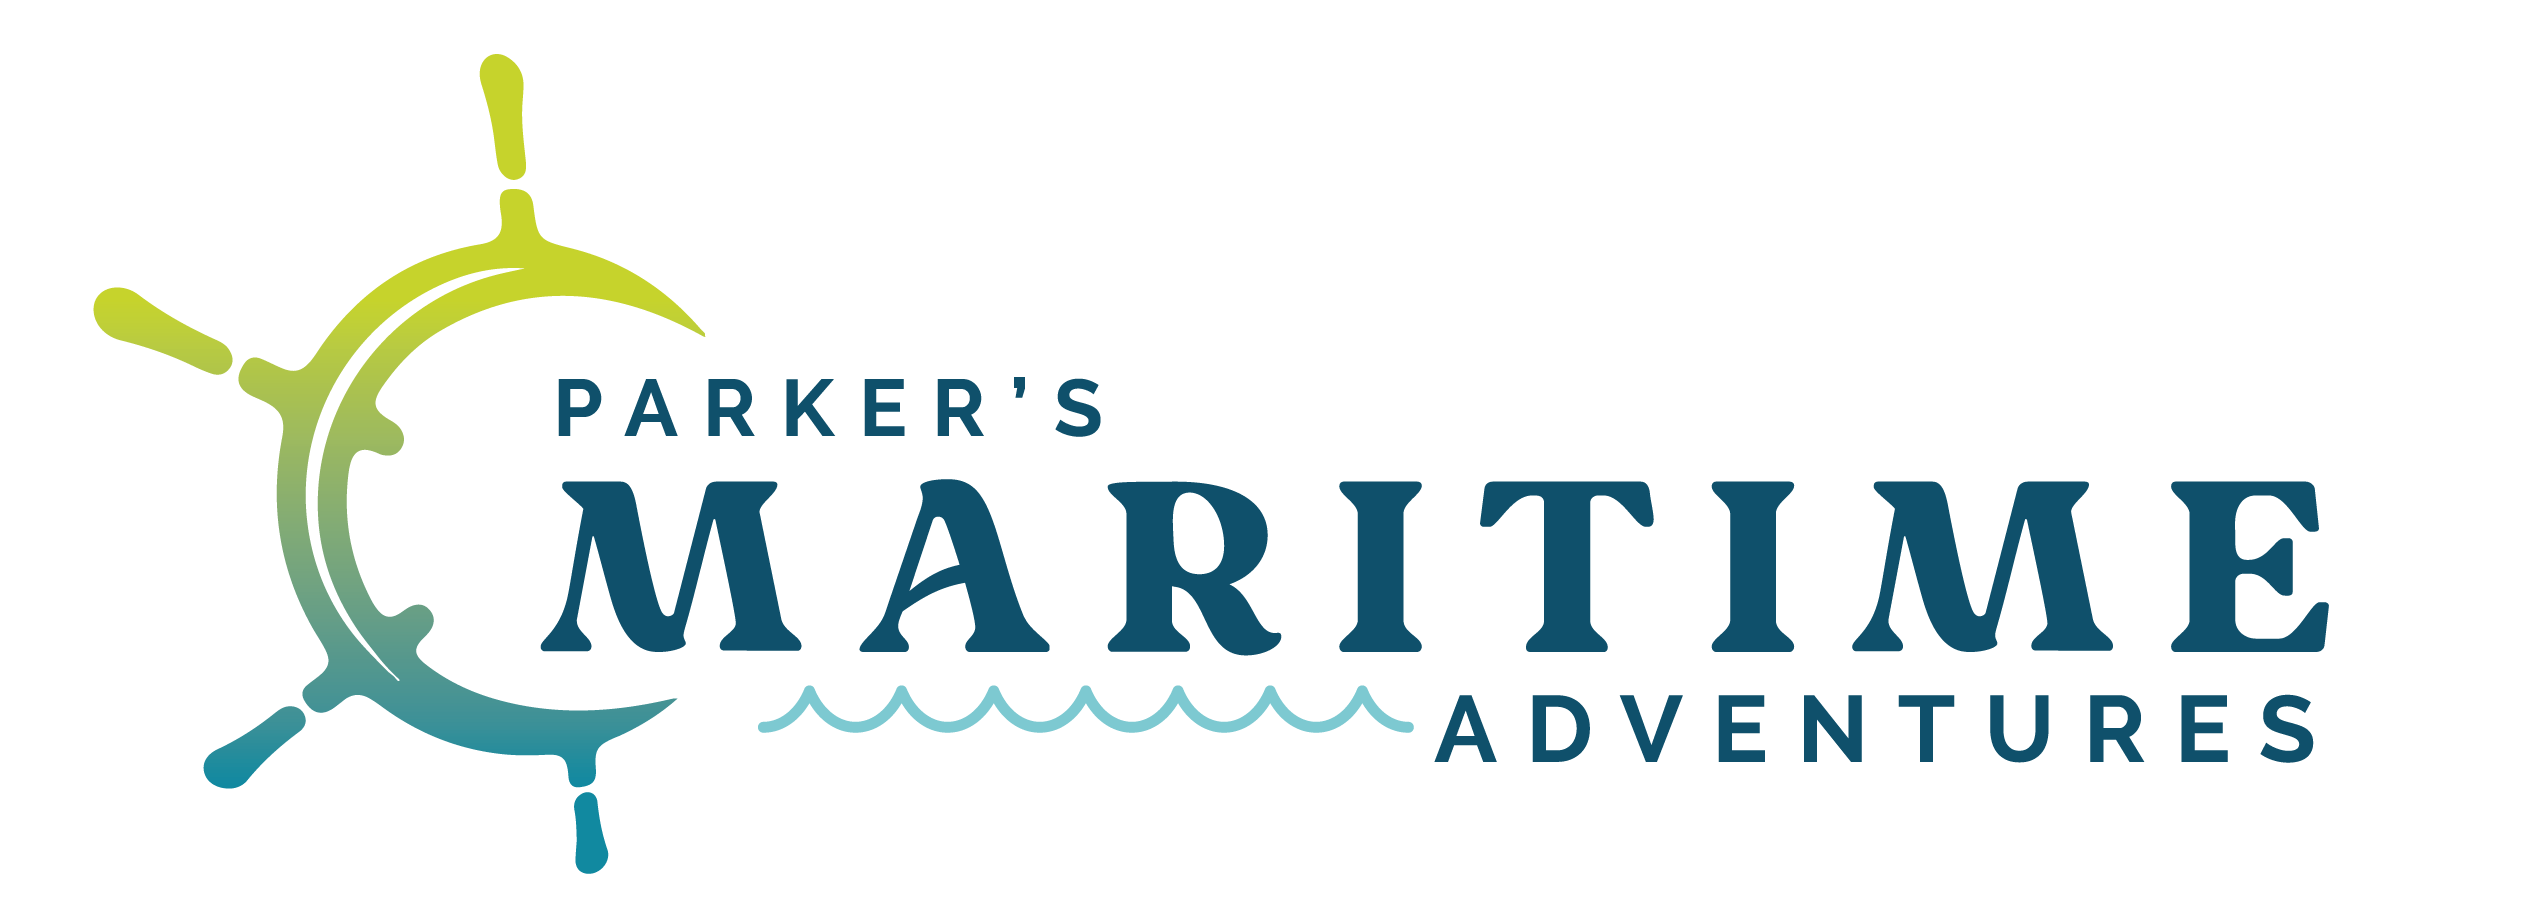 Parker's Maritime Adventures logo